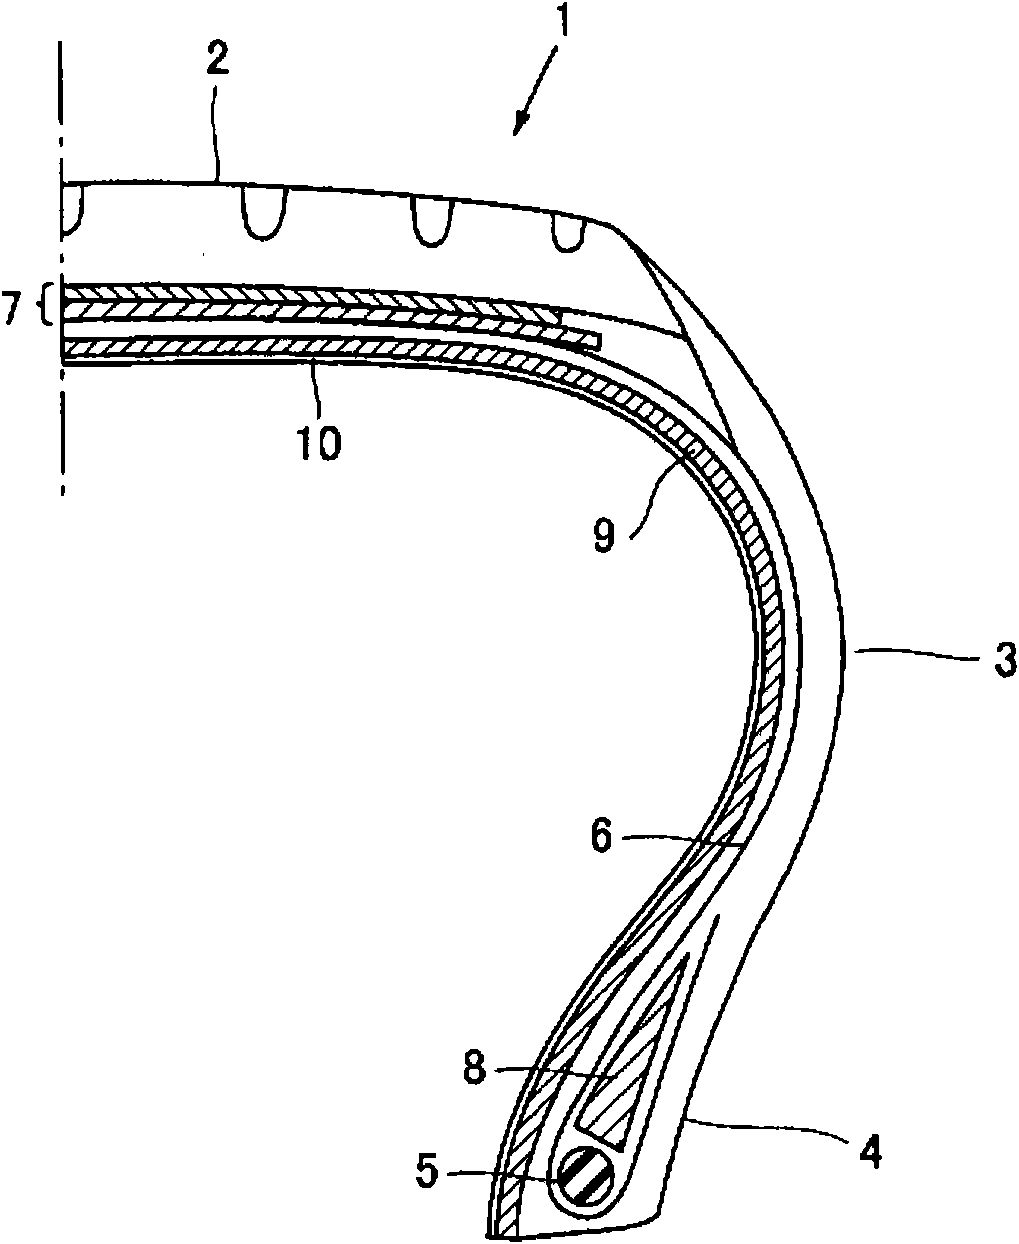 Method for producing polymer sheet for inner liner and method for producing pneumatic tire